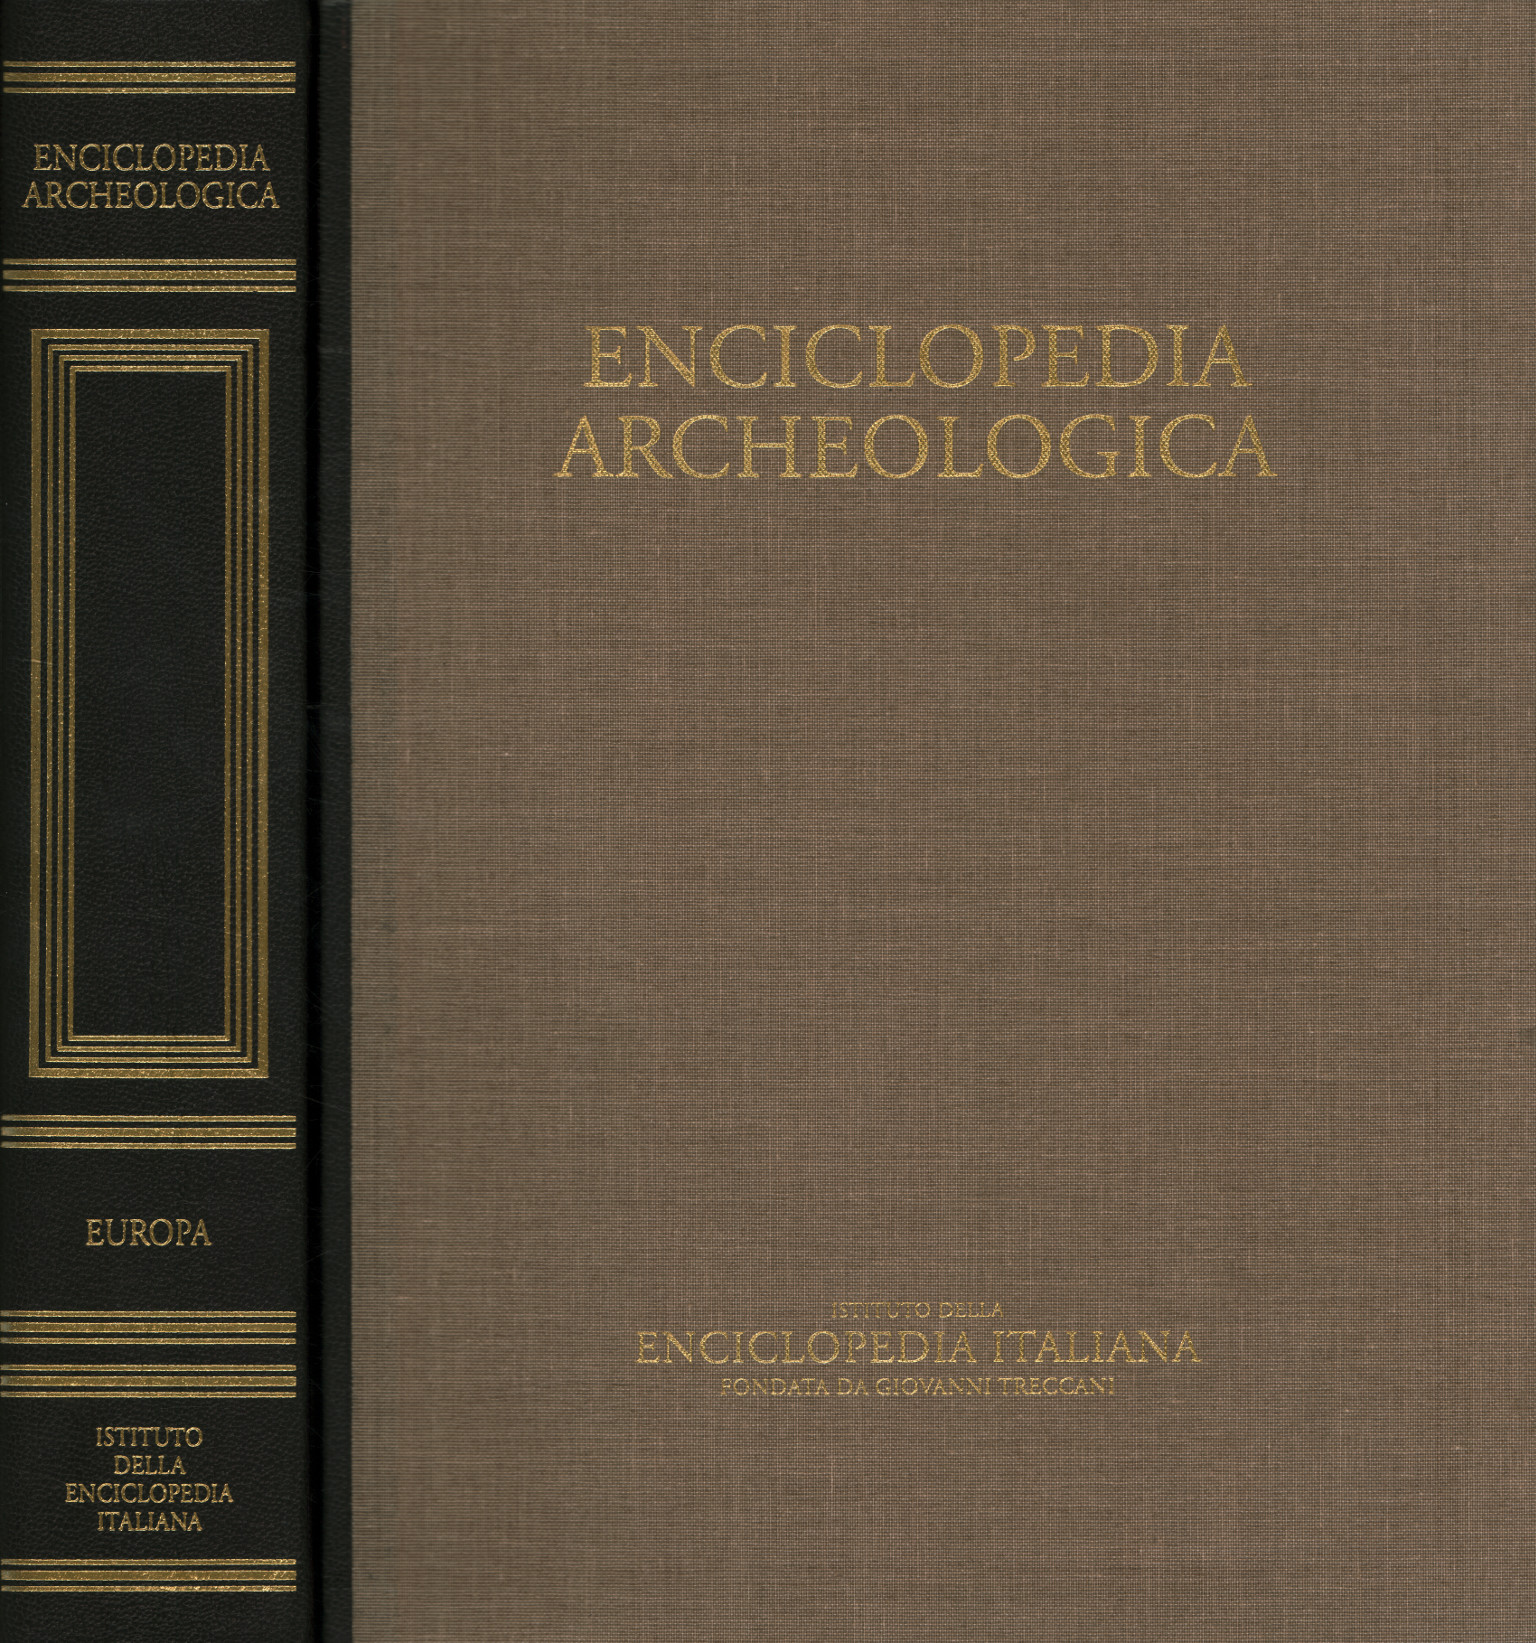 Enciclopedia archeologica. Europa